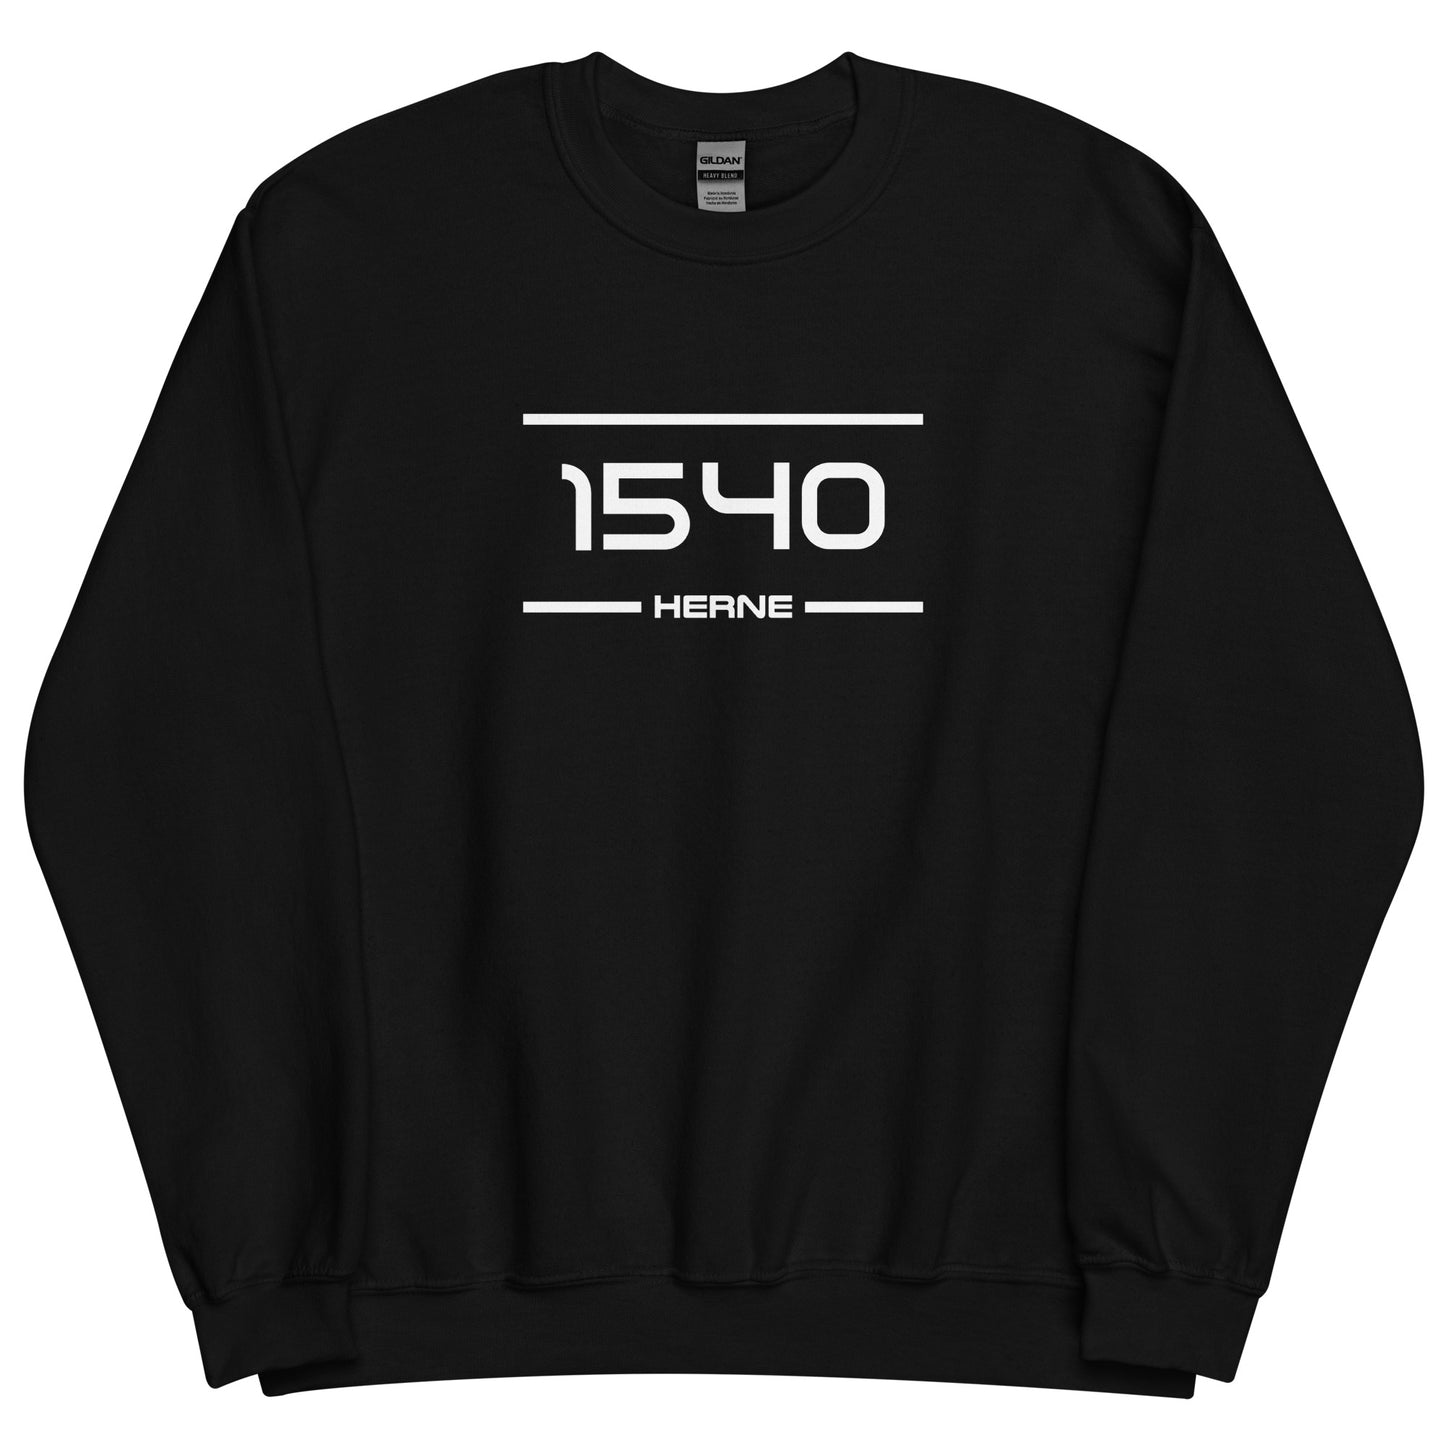 Sweater - 1540 - Herne (M/V)